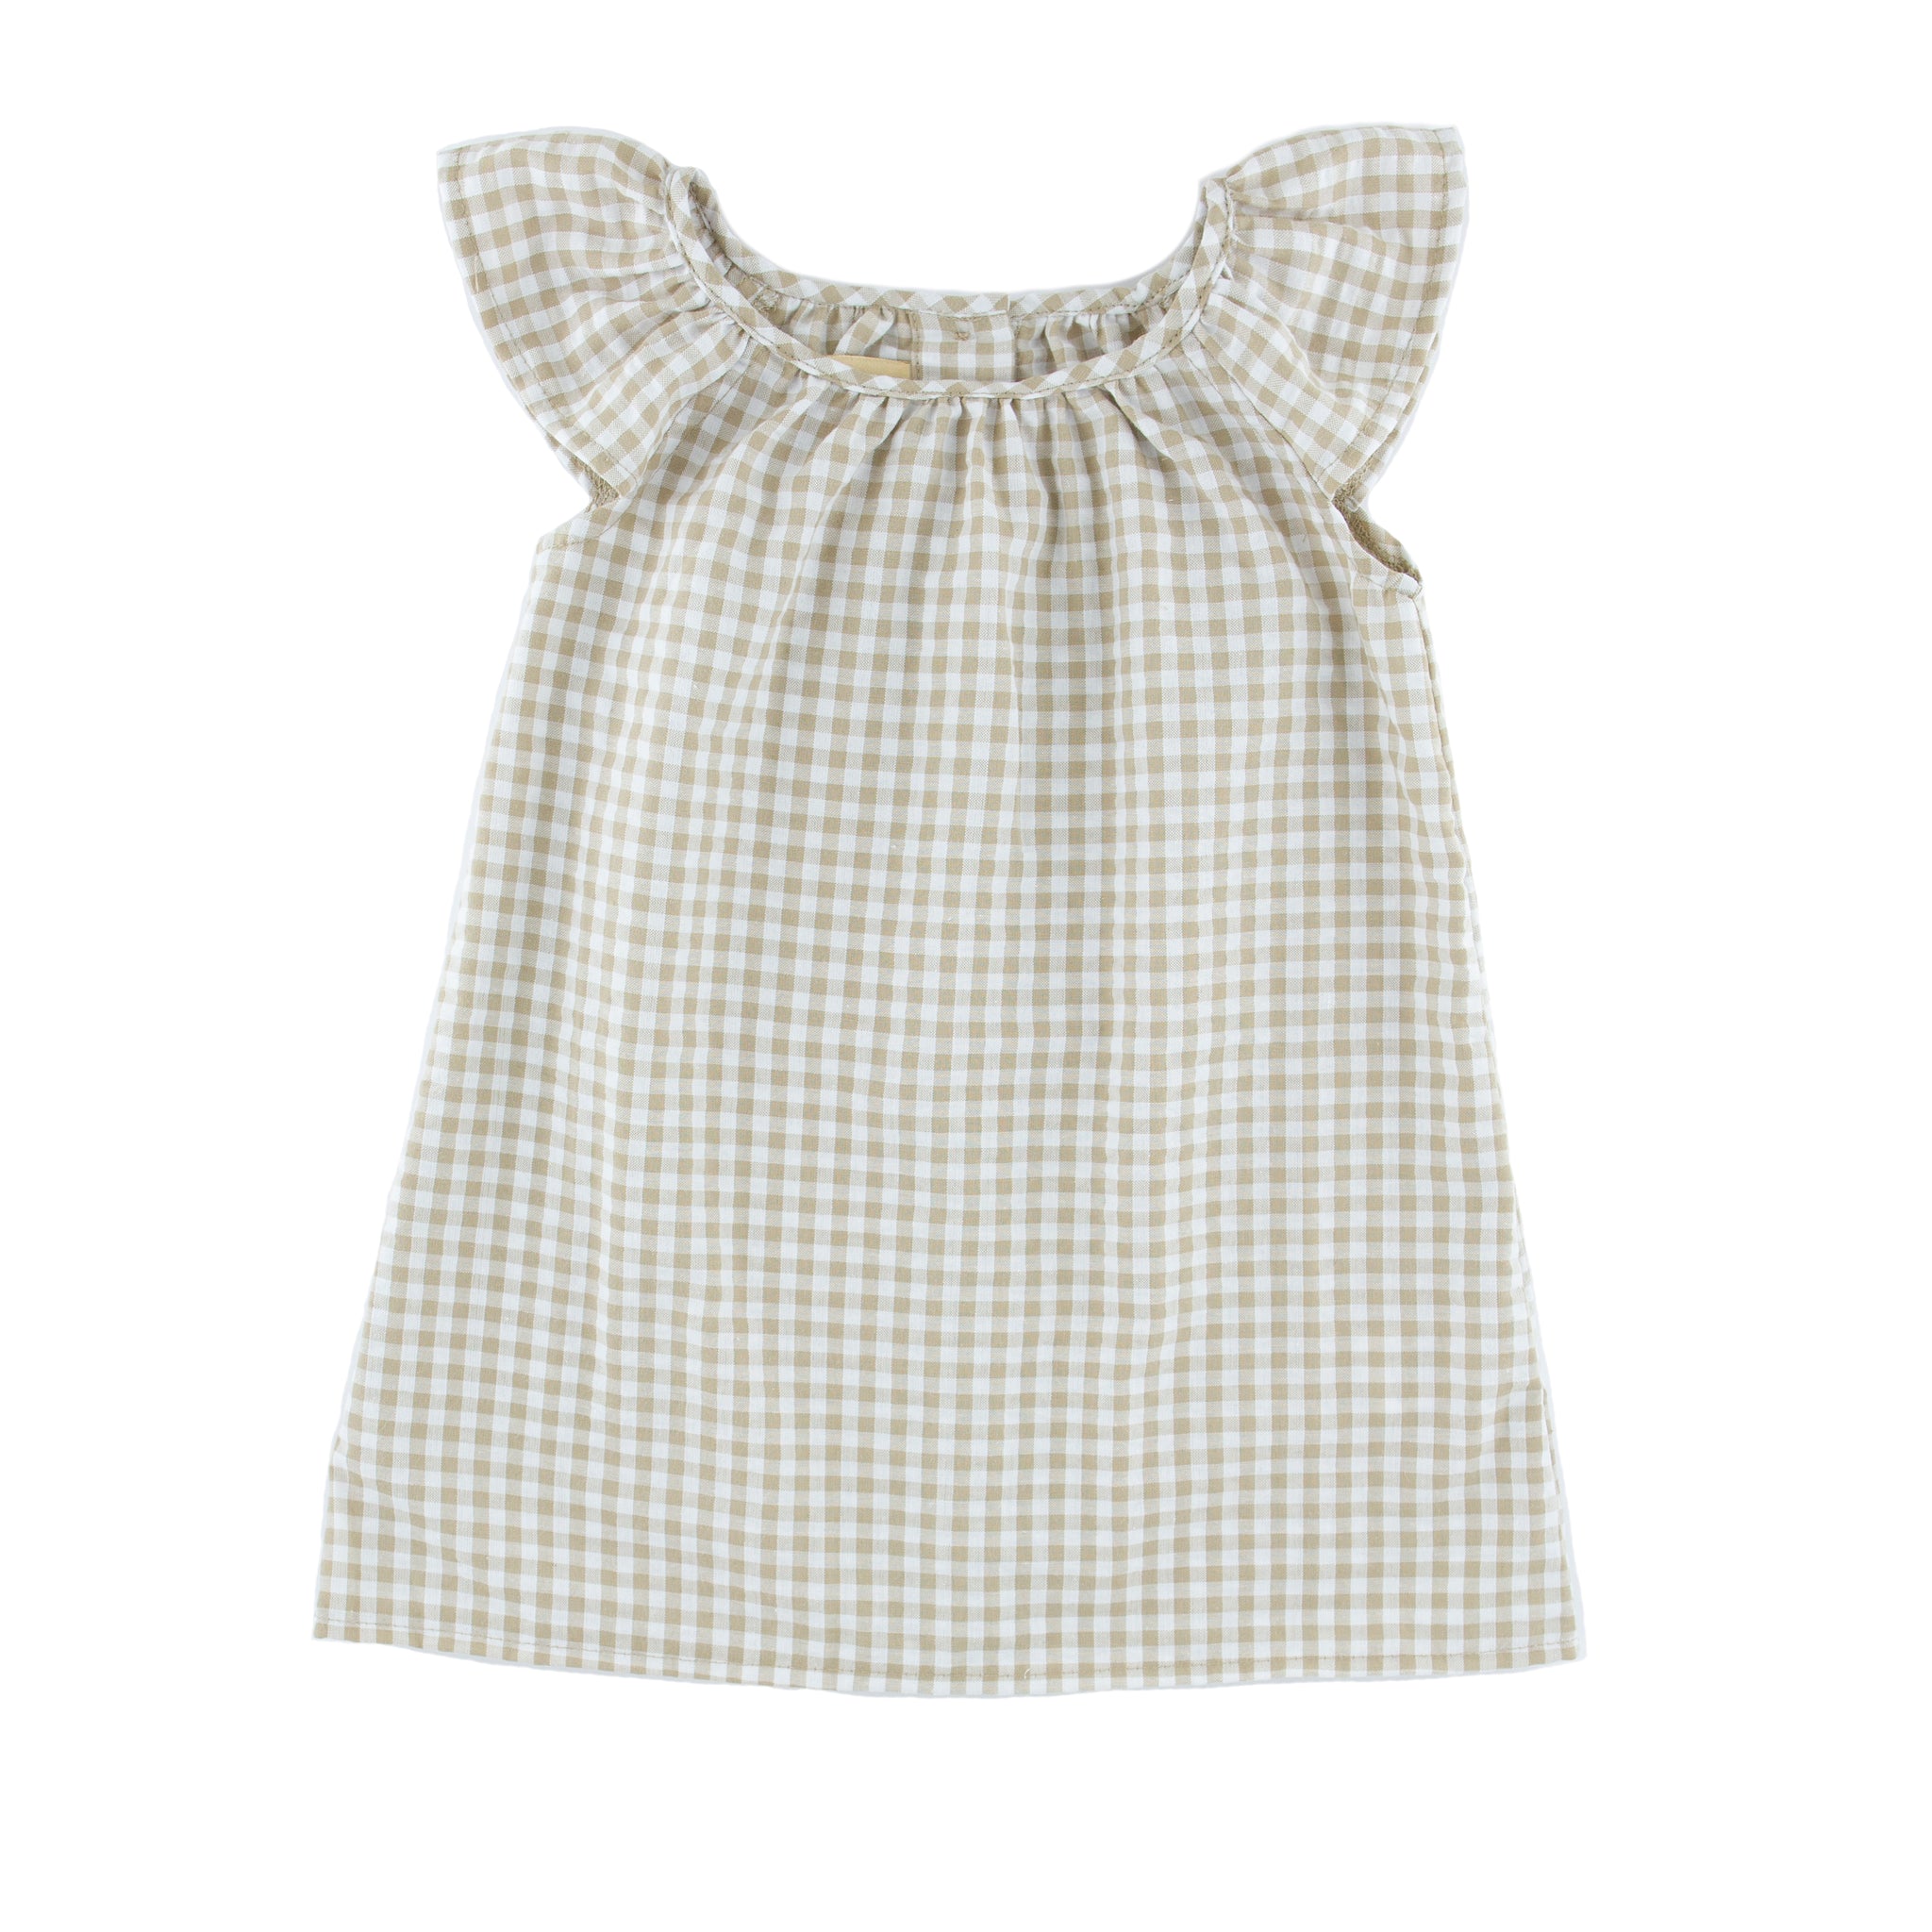 Girl's Short Sleeve Rosie Dress - Checkered Beige- 6 months - 8 years - Seersucker Polycotton